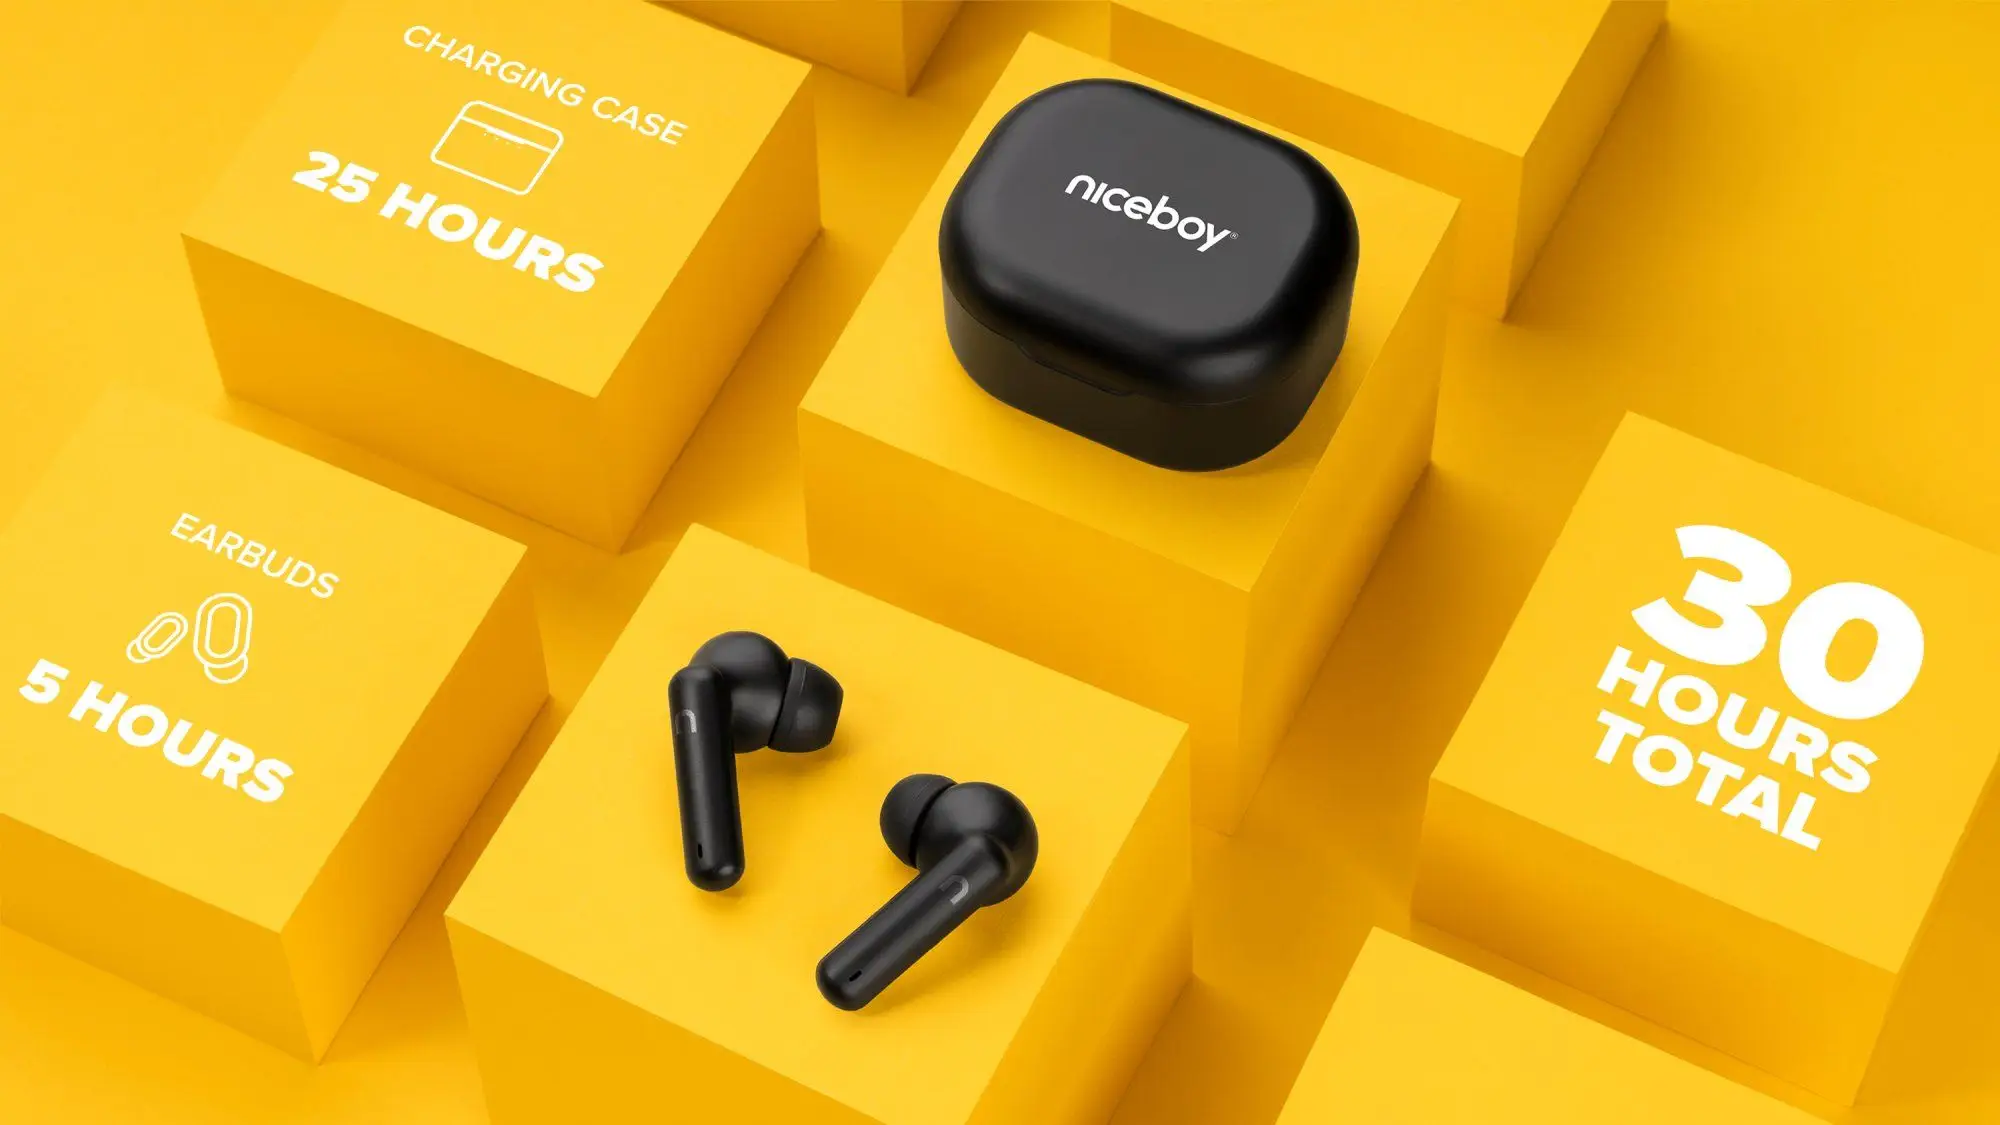  Bluetooth slušalice niceboy hive pins 3 mikrofon handsfree telefon aplikacije ionskog ekvilizatora izvrstan zvuk dugo trajanje baterije kutija za punjenje 